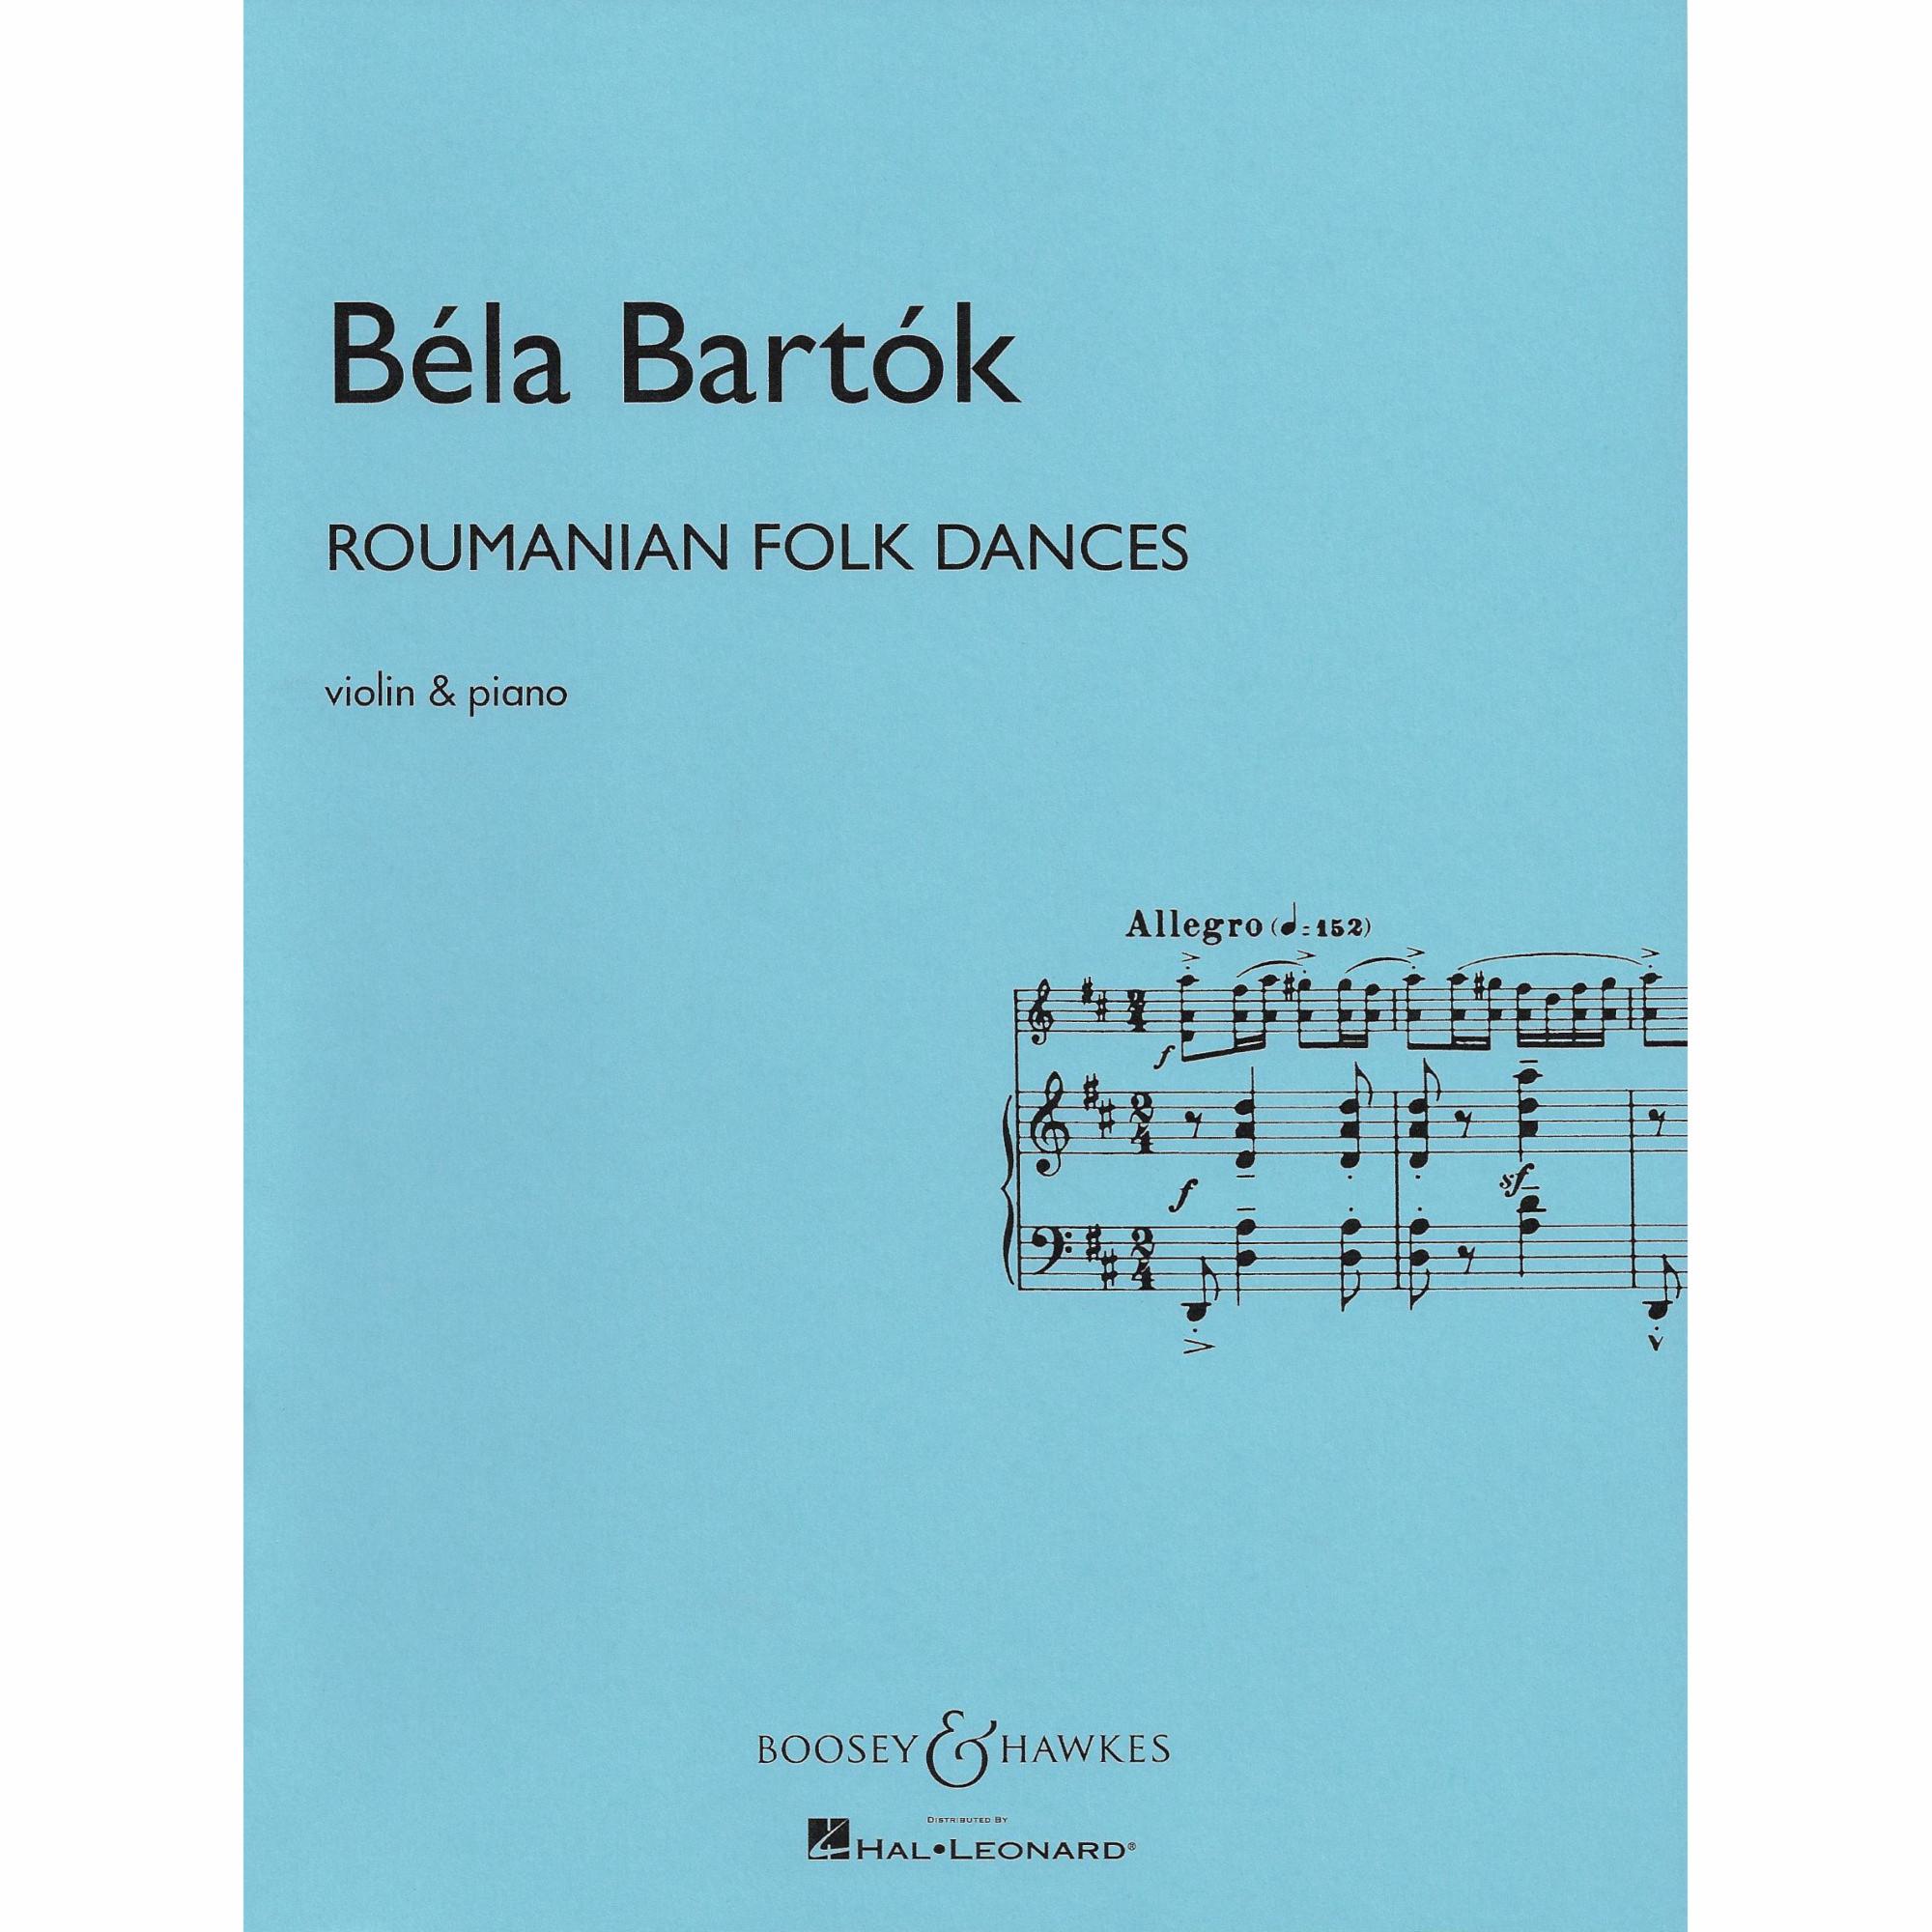 Bartok -- Roumanian Folk Dances for Violin and Piano